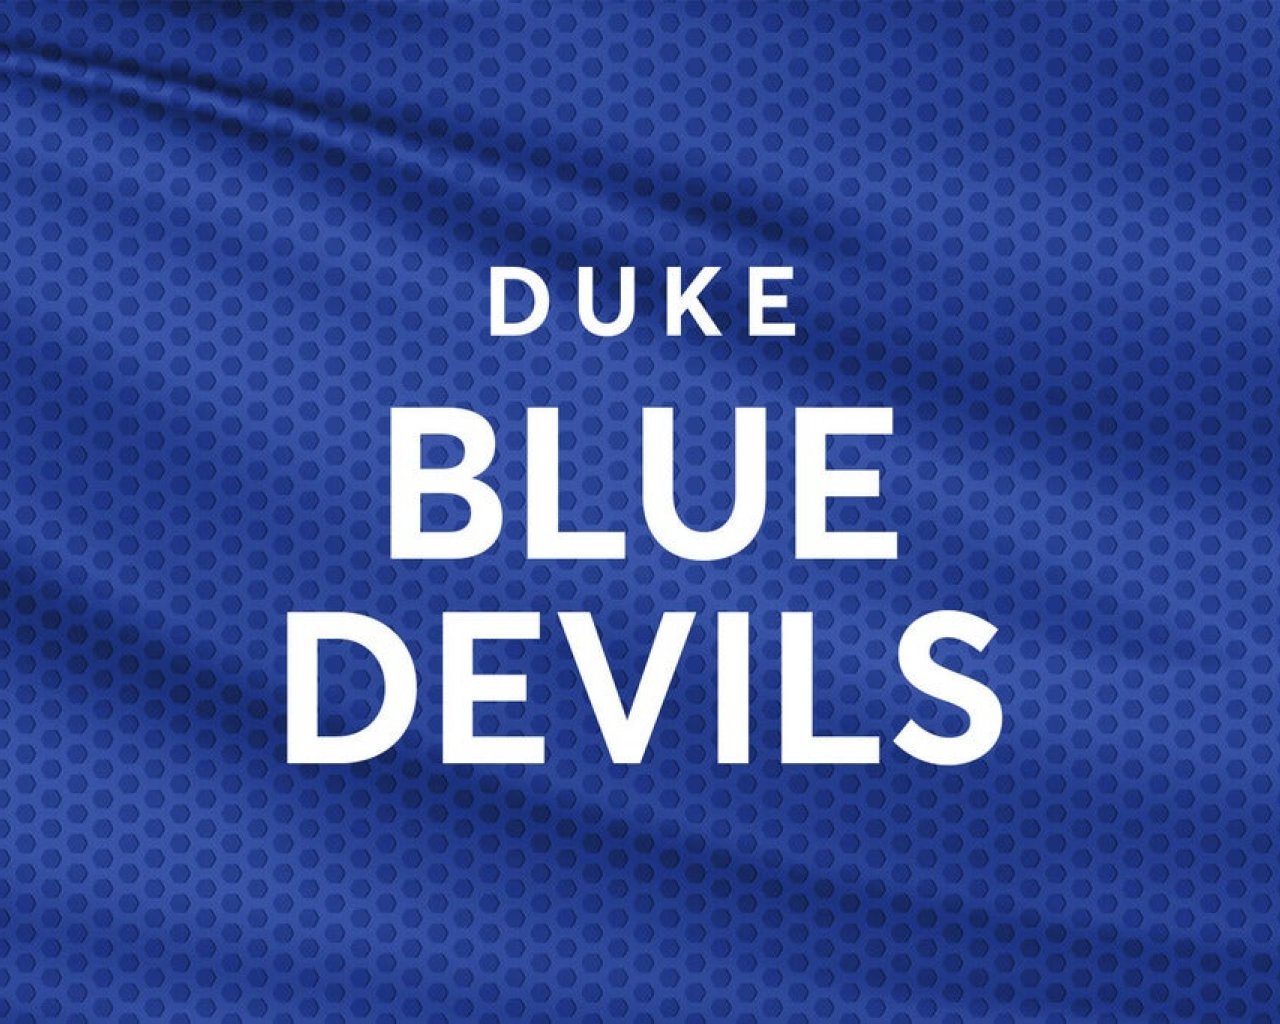 Duke Blue Devils Men's Basketball